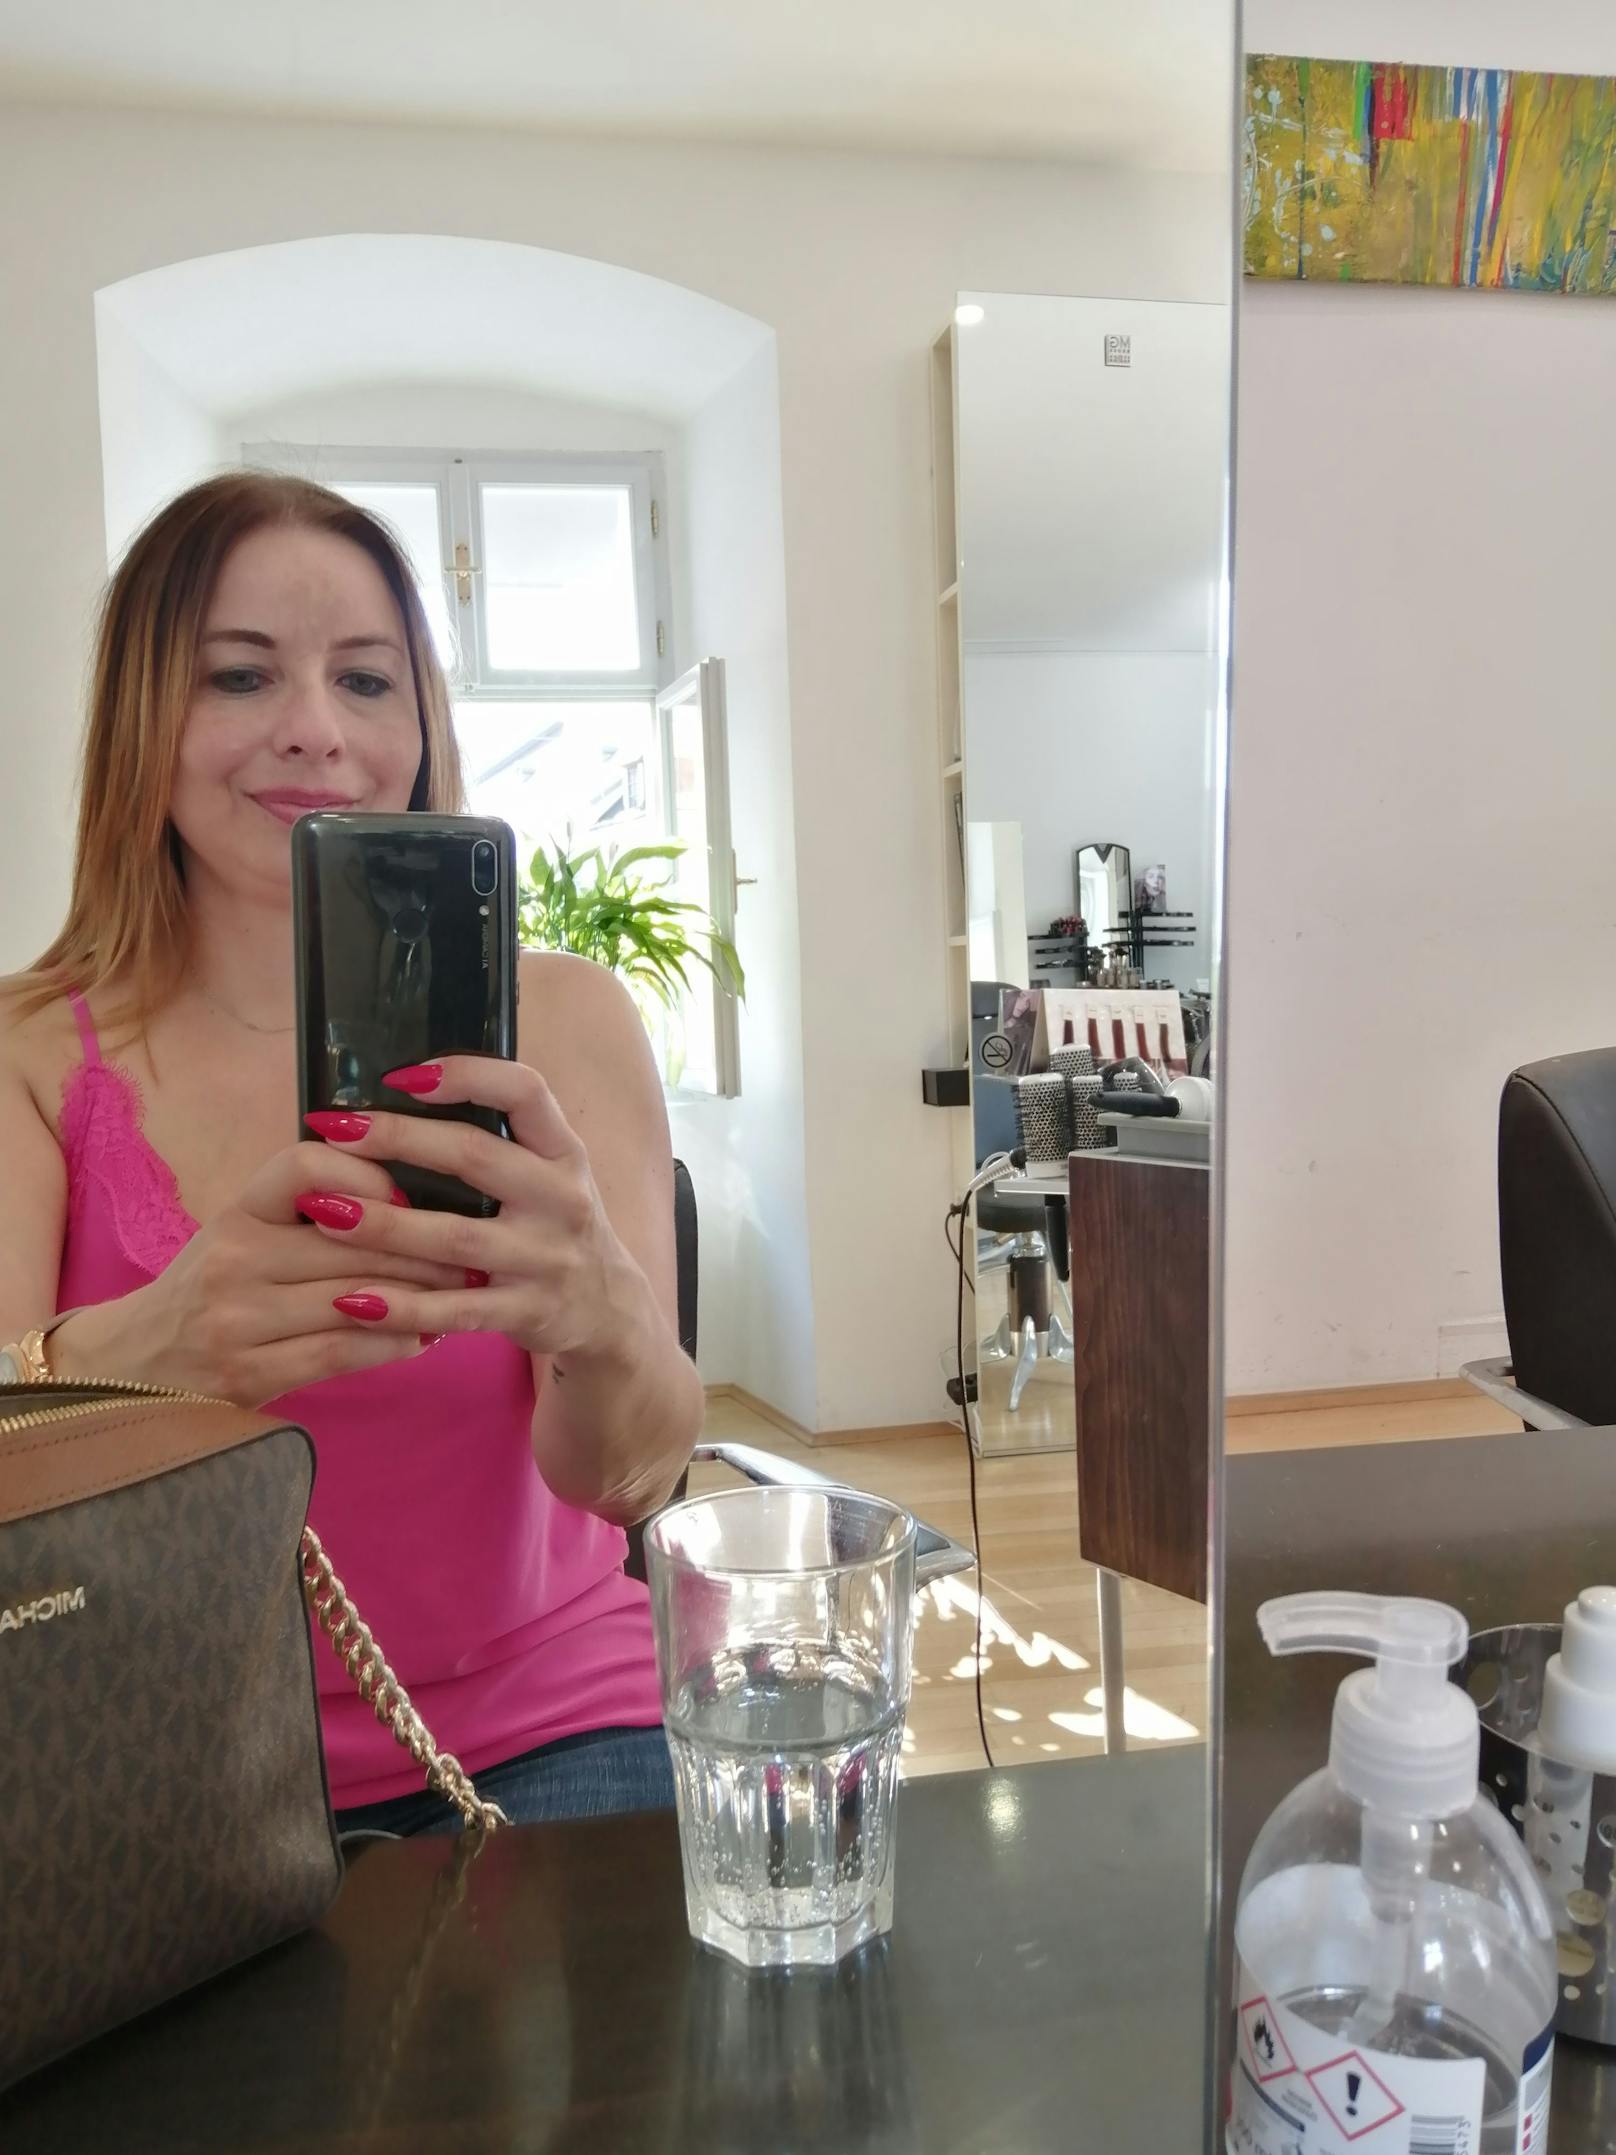 Selfie im Friseursalon Haarkunst Klee: Hier ließ sich Claudia ihre Haare schön stylen und tönen.